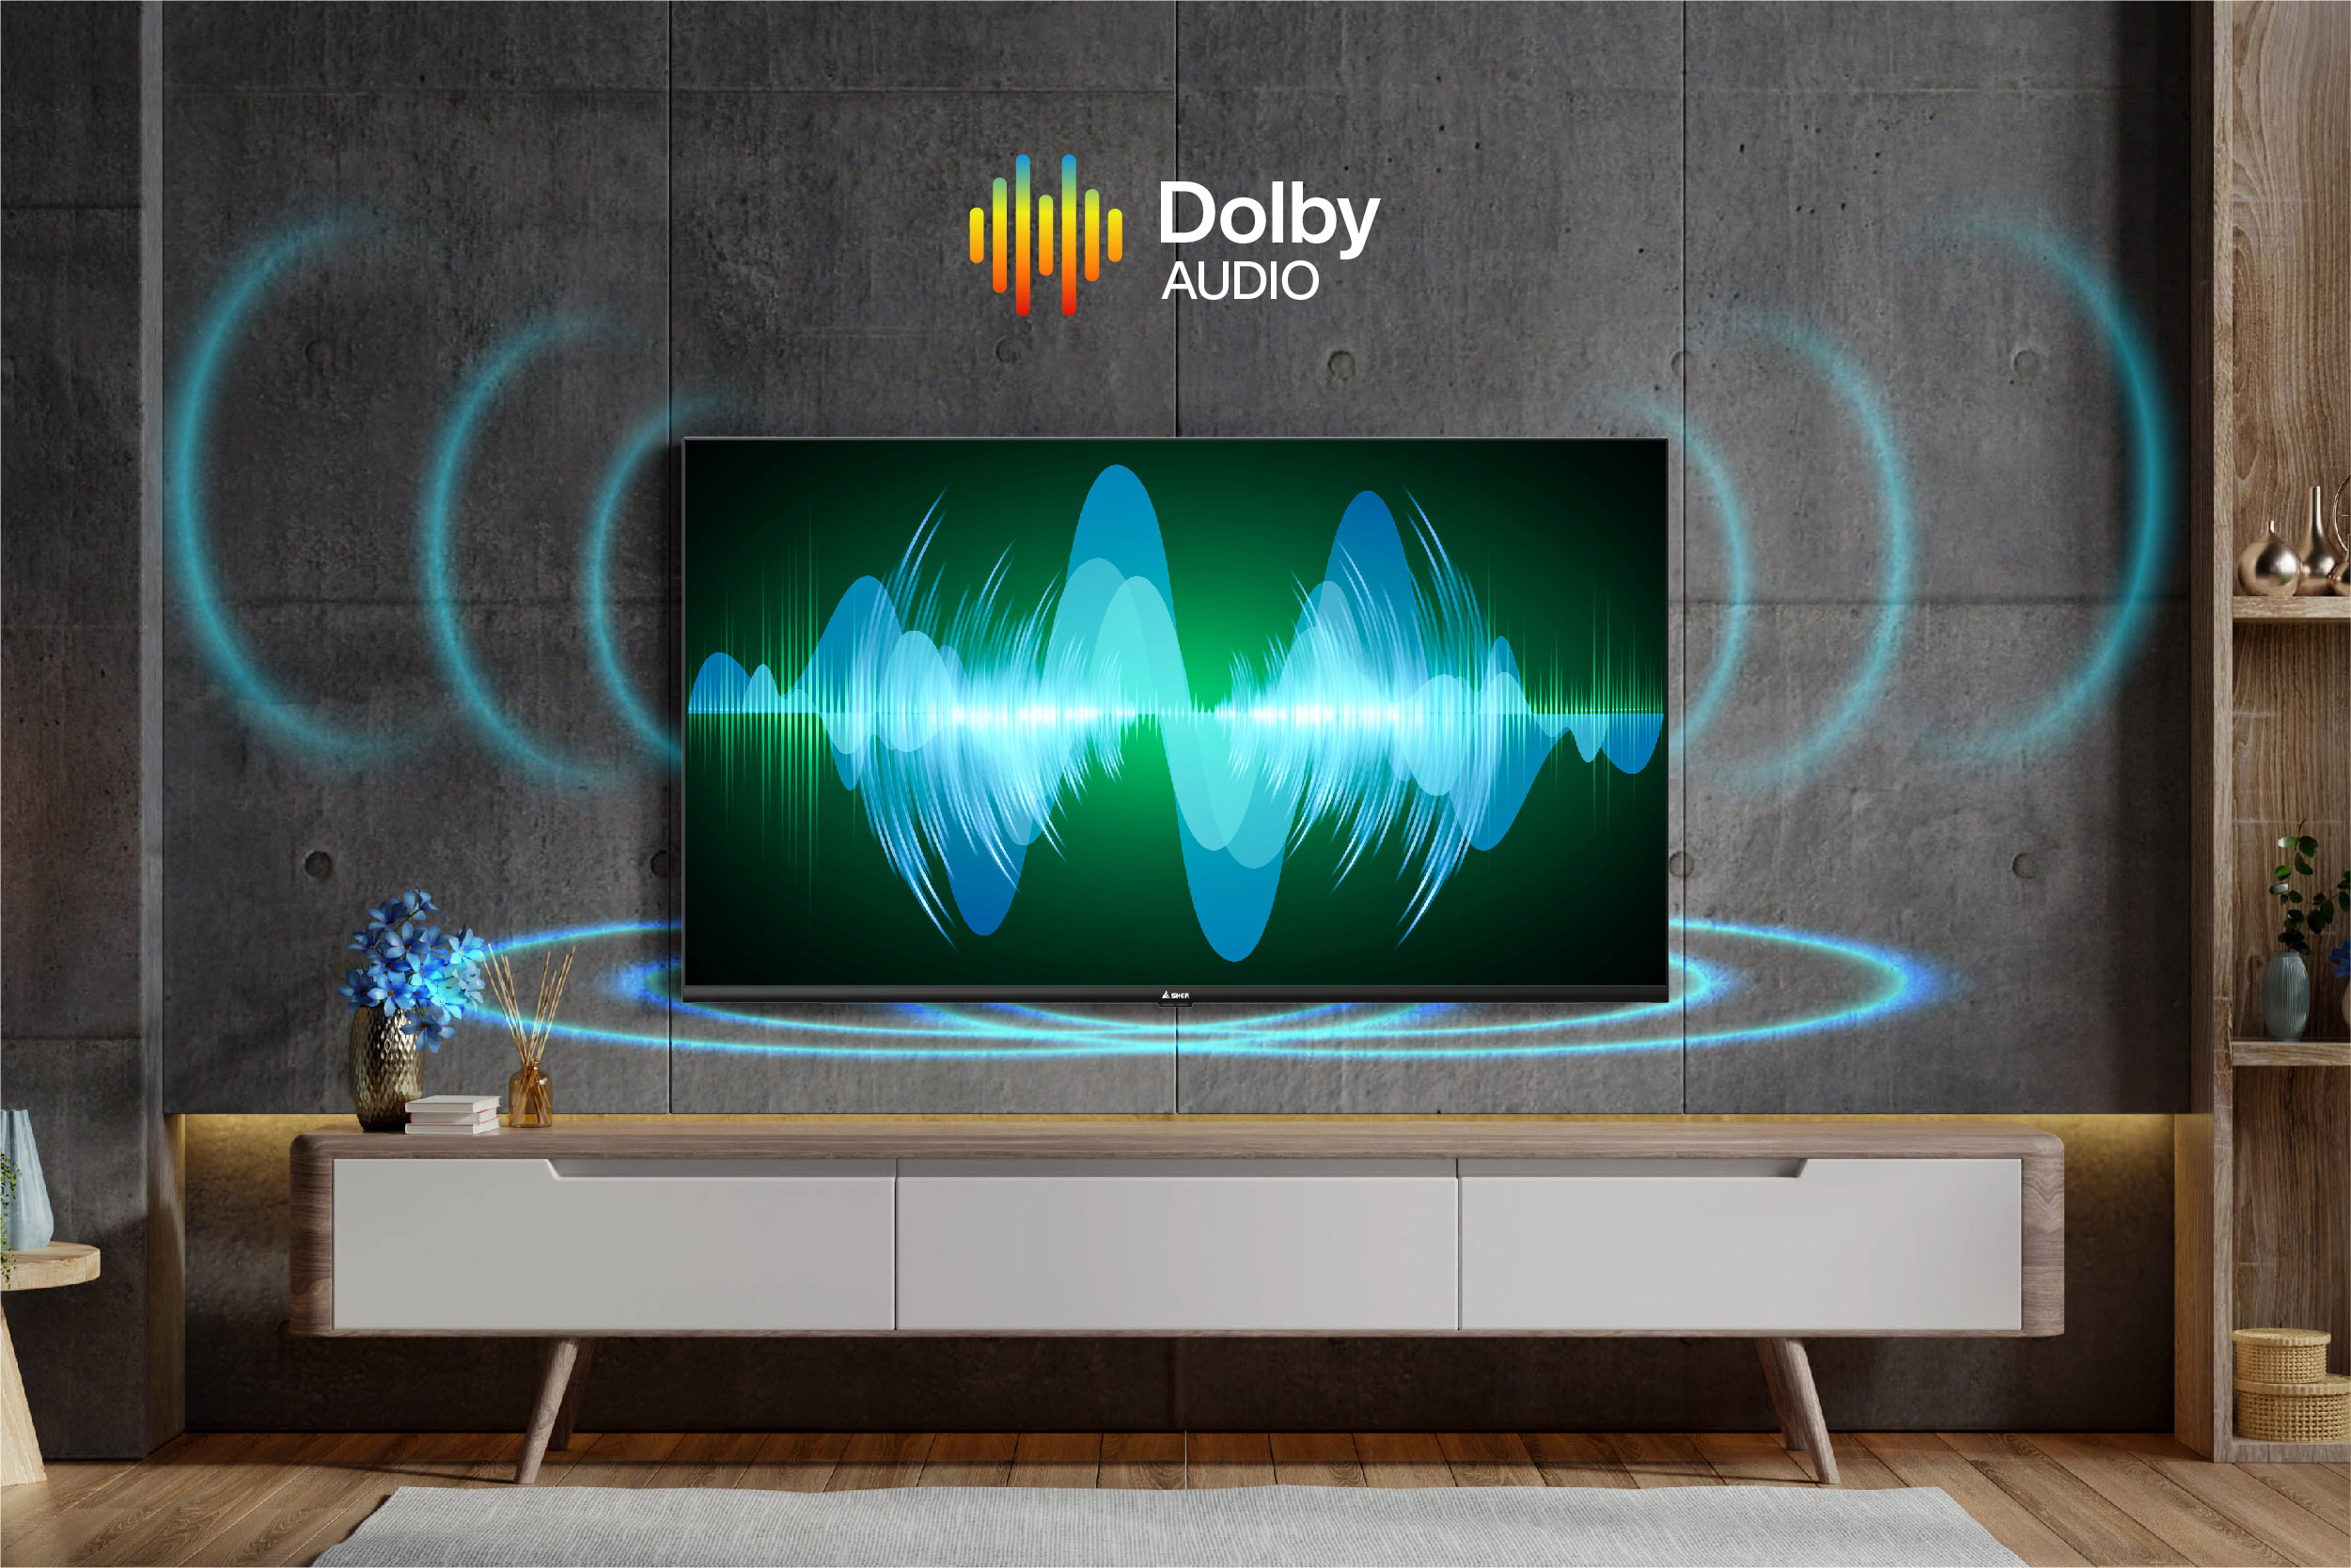 Tivi A-32GH6600 sử dụng công nghệ âm thanh Dolby Audio